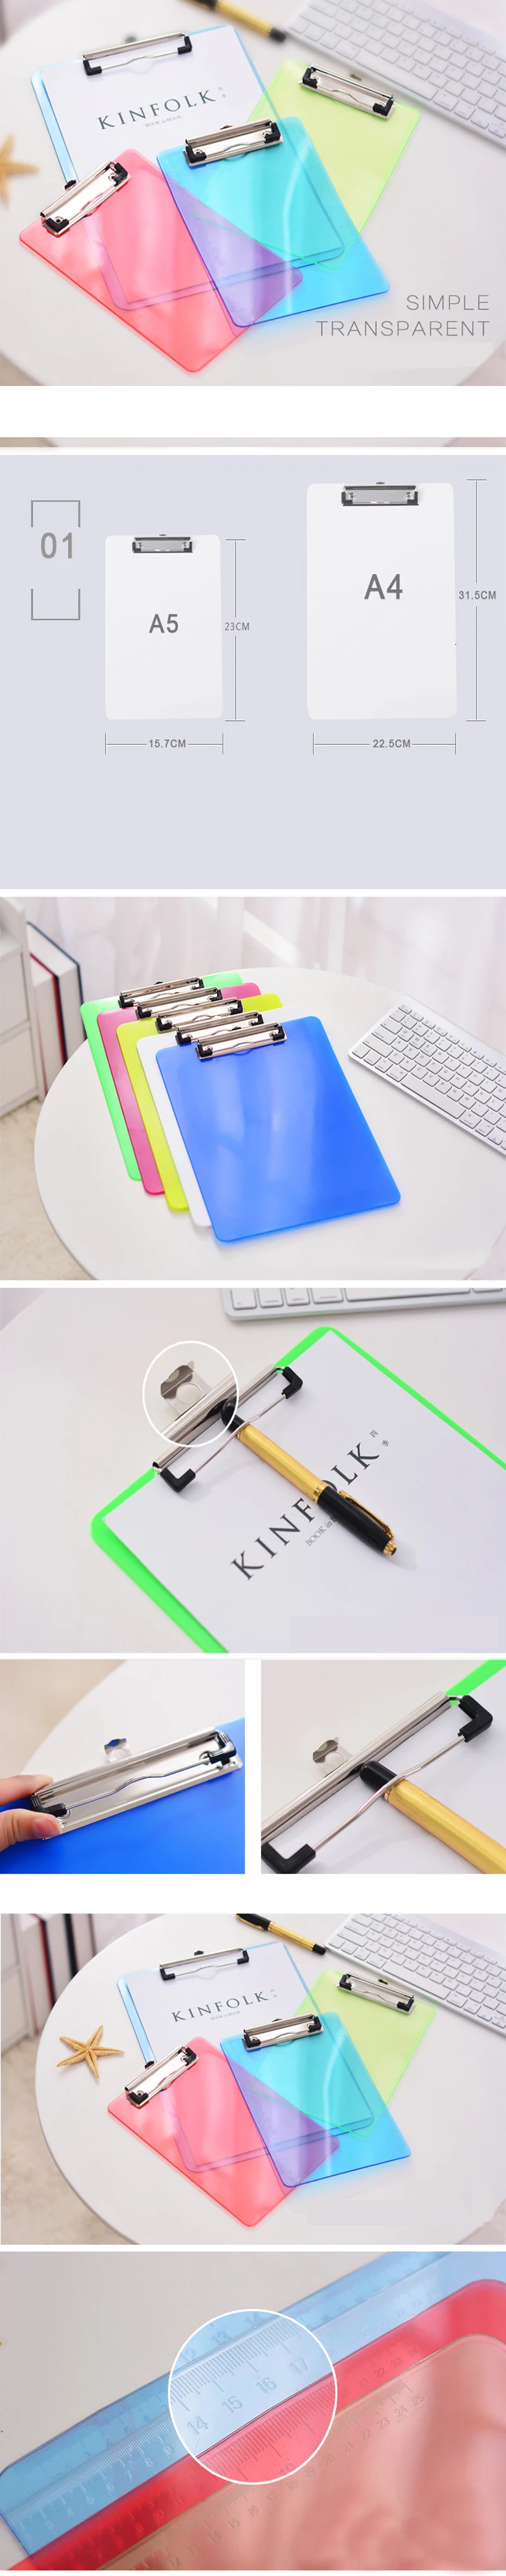 A4 пластика ярких цветов Настольный бумажный лист записи документа планшет для файлов папка для рисования держателя с зажимом в буфере